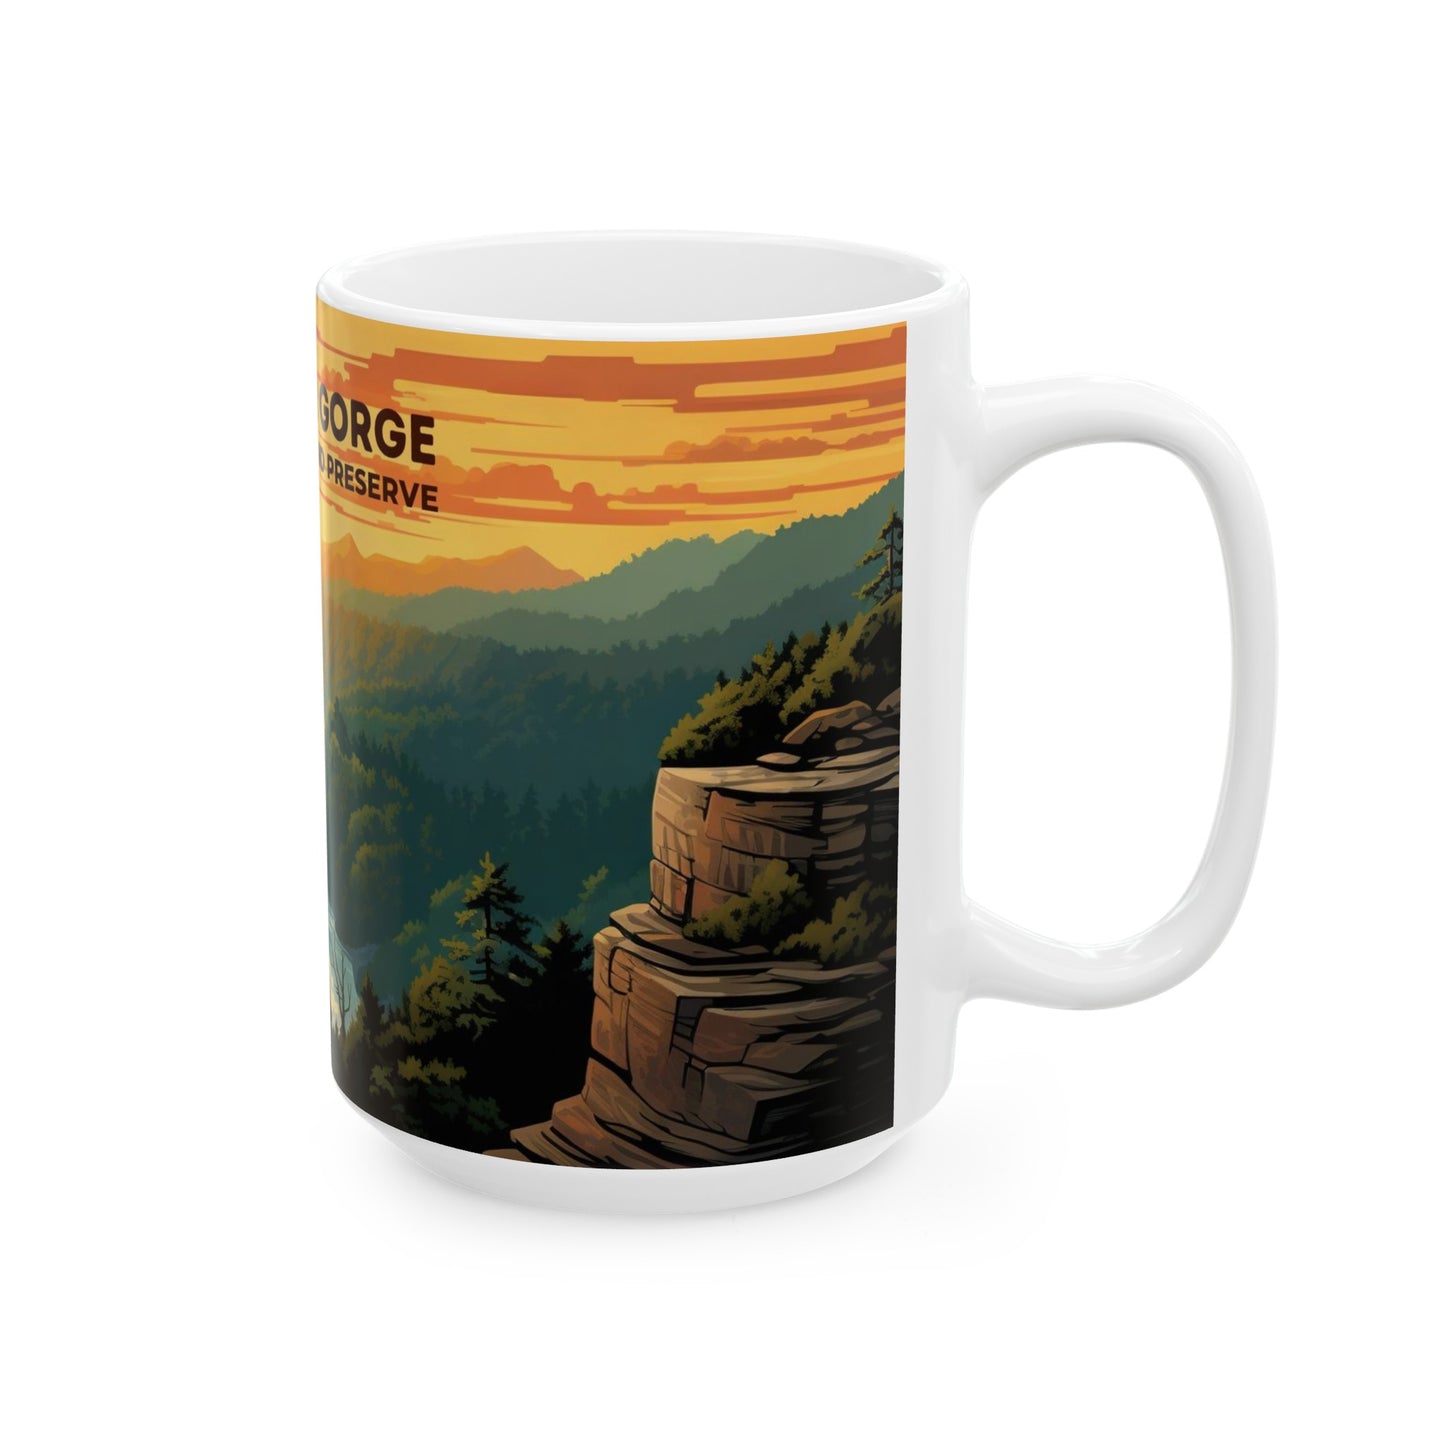 New River Gorge National Park Mug | White Ceramic Mug (11oz, 15oz)